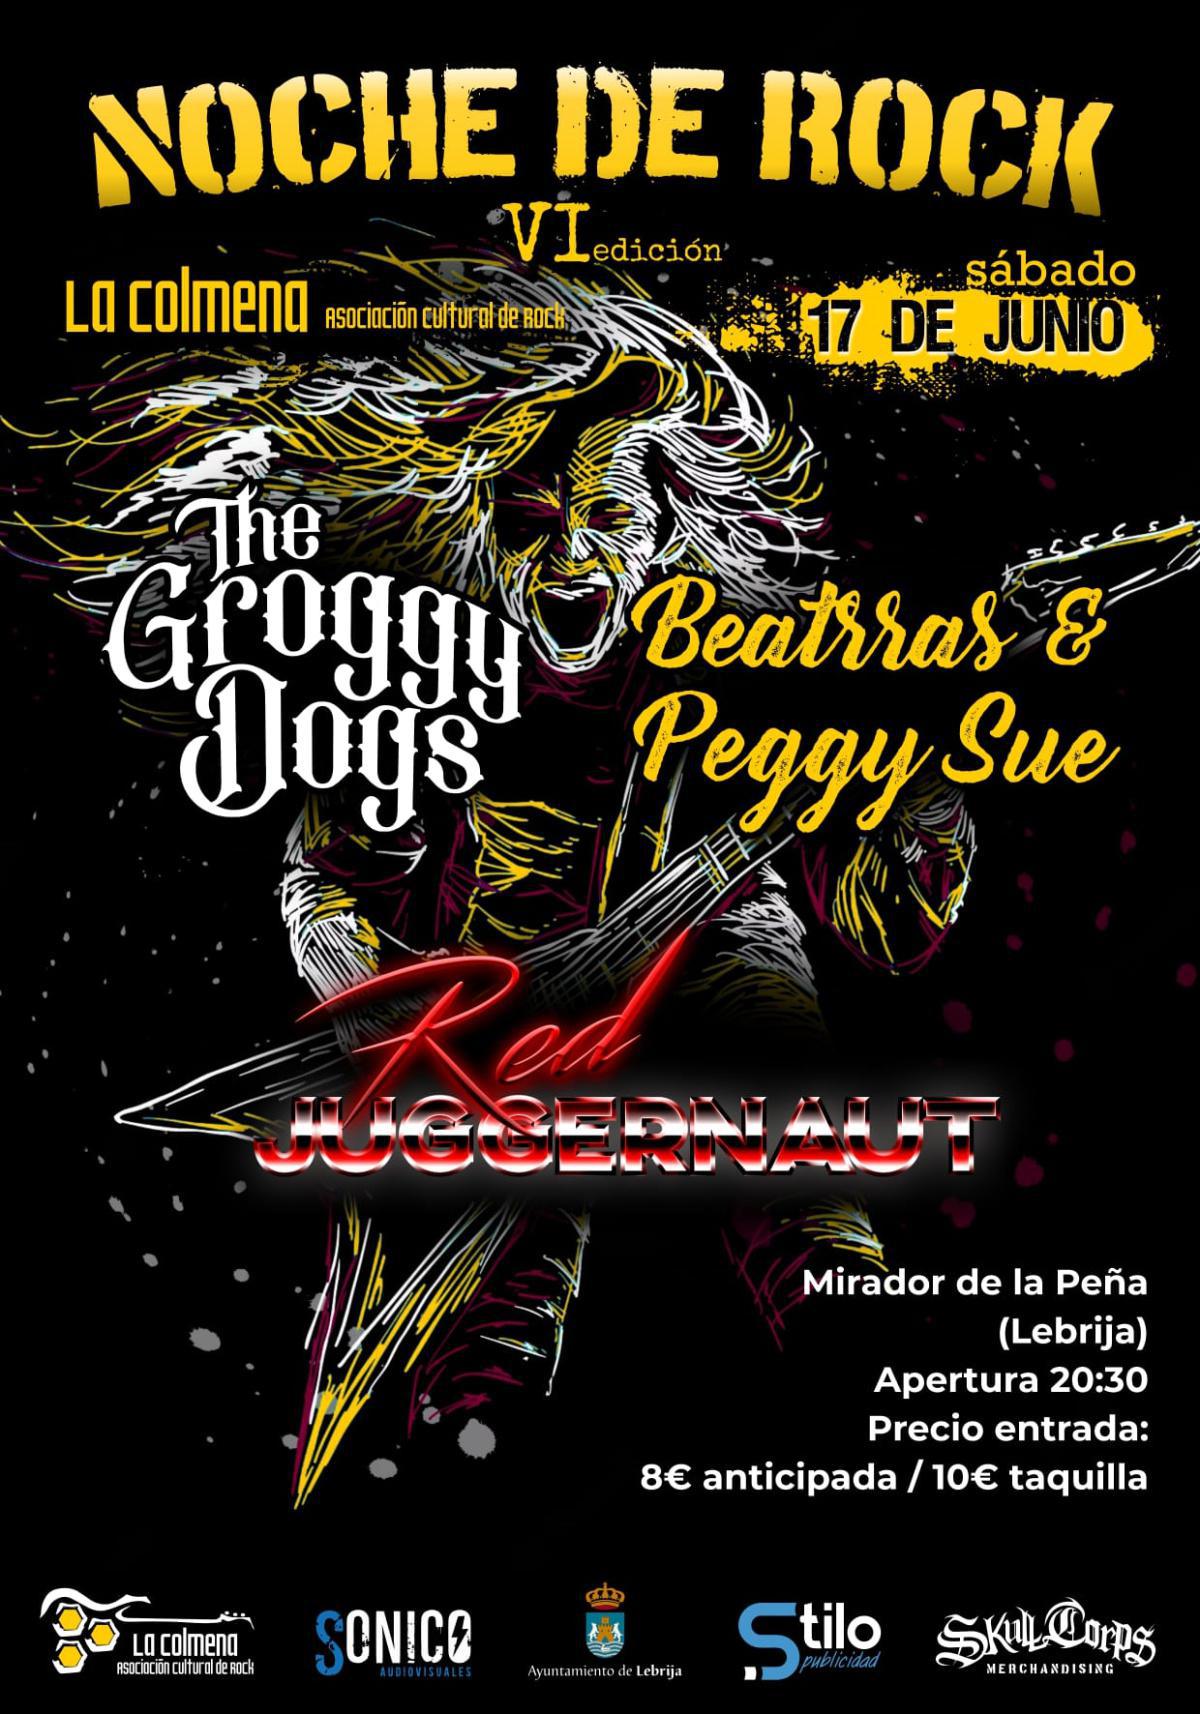  La VI edición de la Noche de Rock se celebrará el próximo 17 de junio en el Mirador de la Peña 